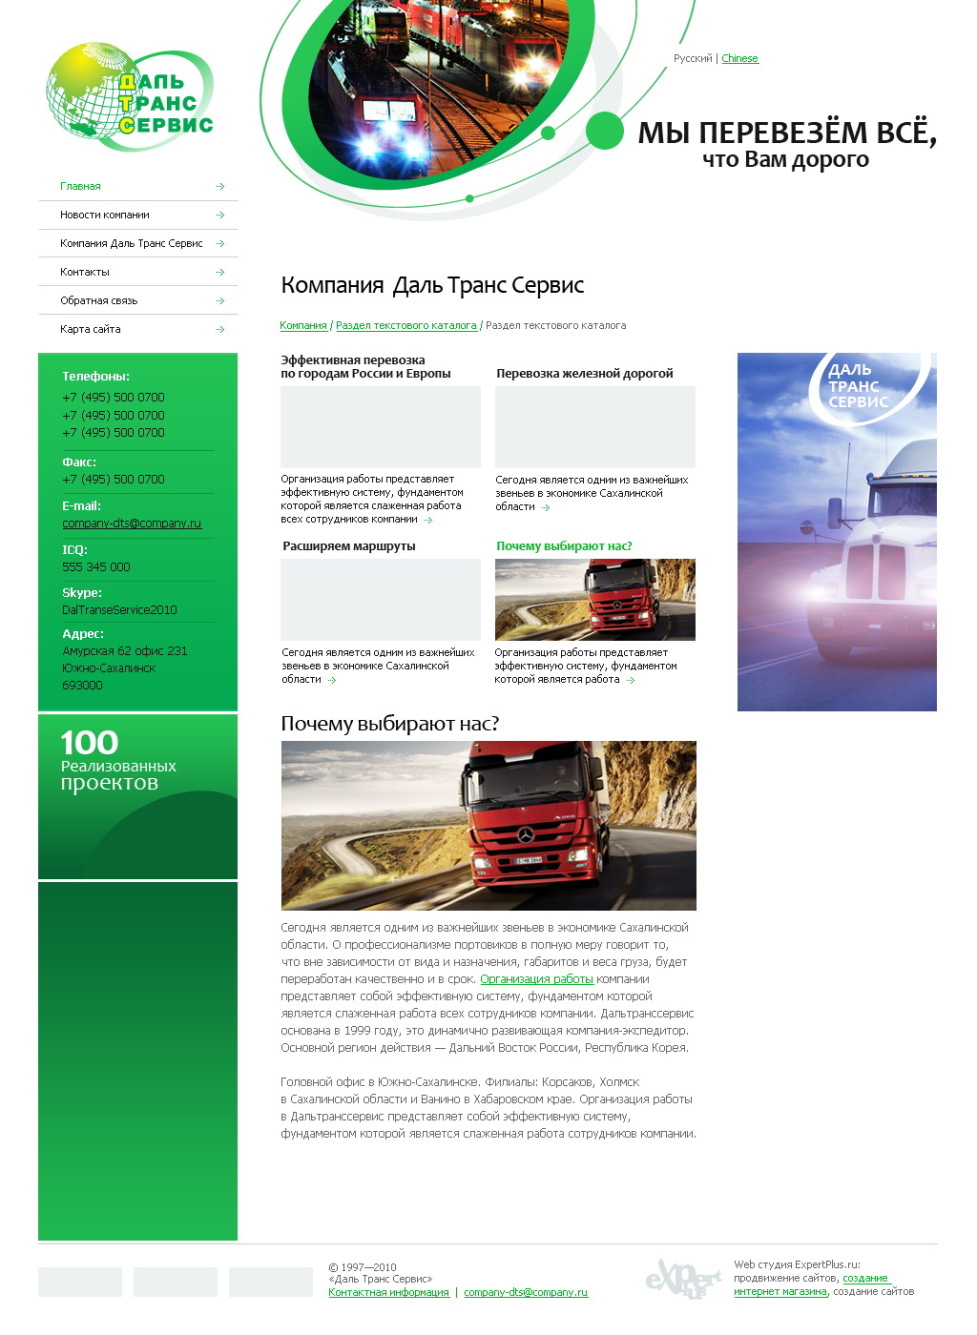 Разработка сайта для грузовых перевозок компании "Даль Транс Сервис"